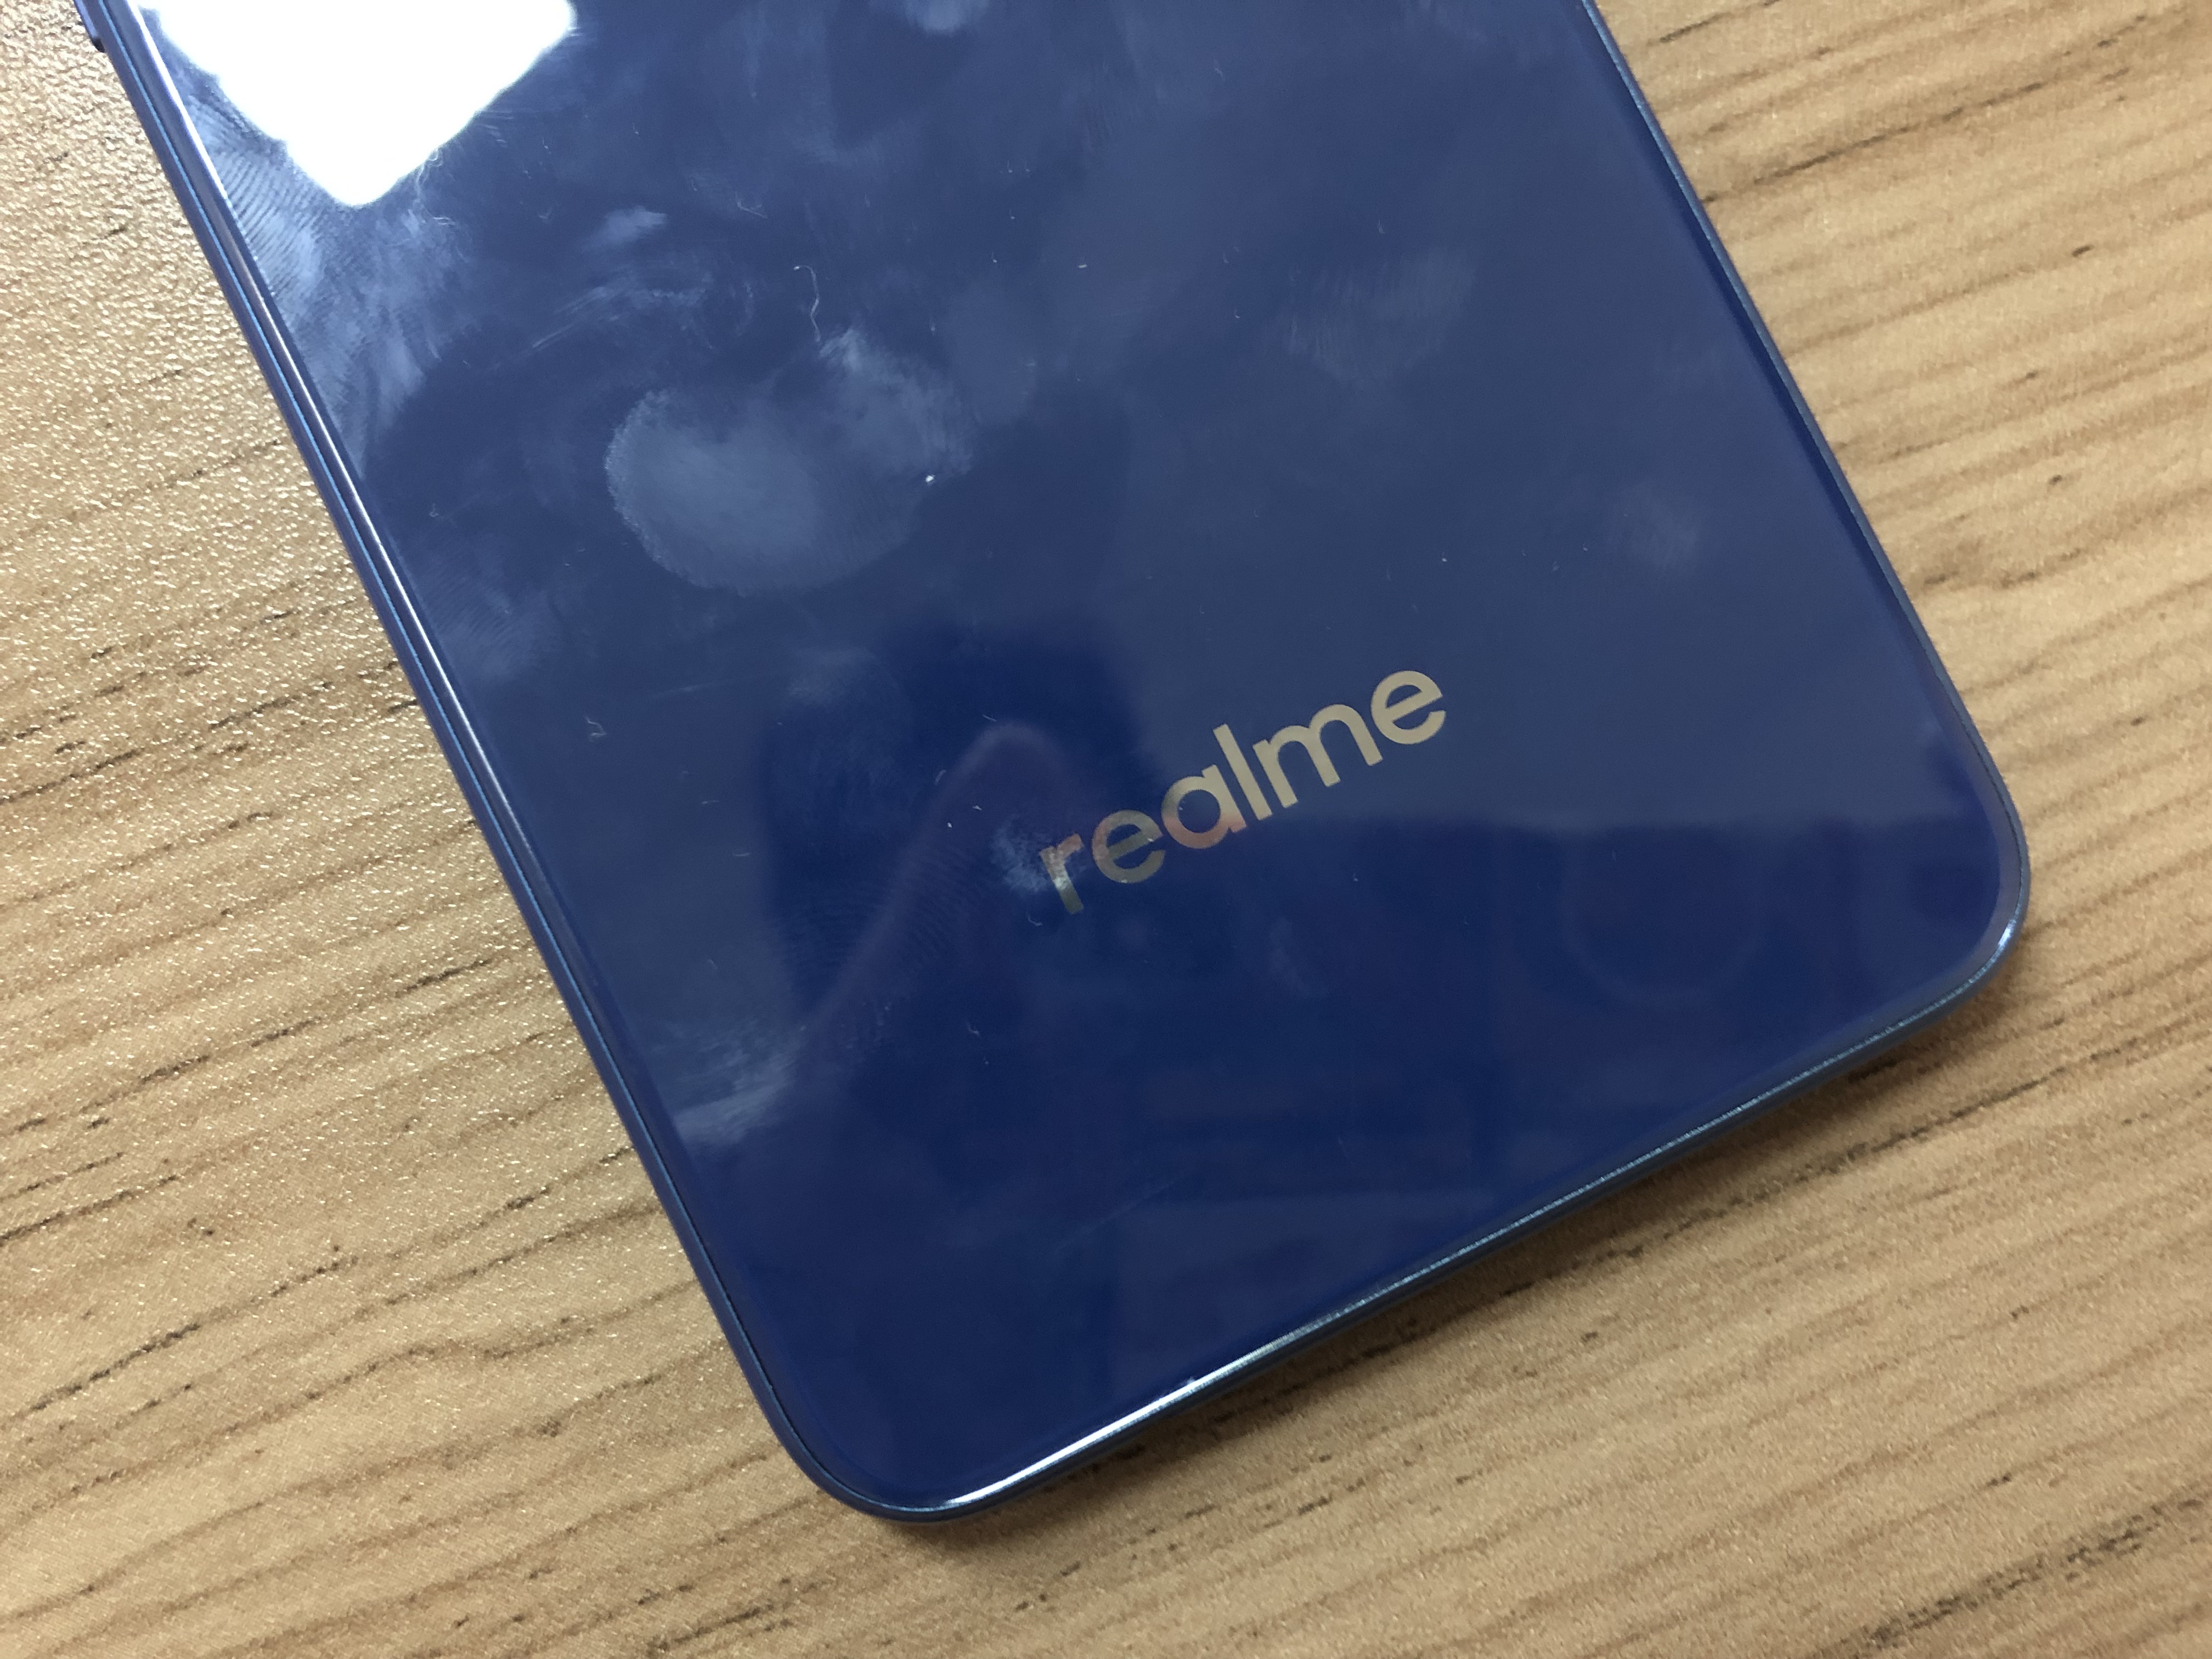 Realme C1 Review